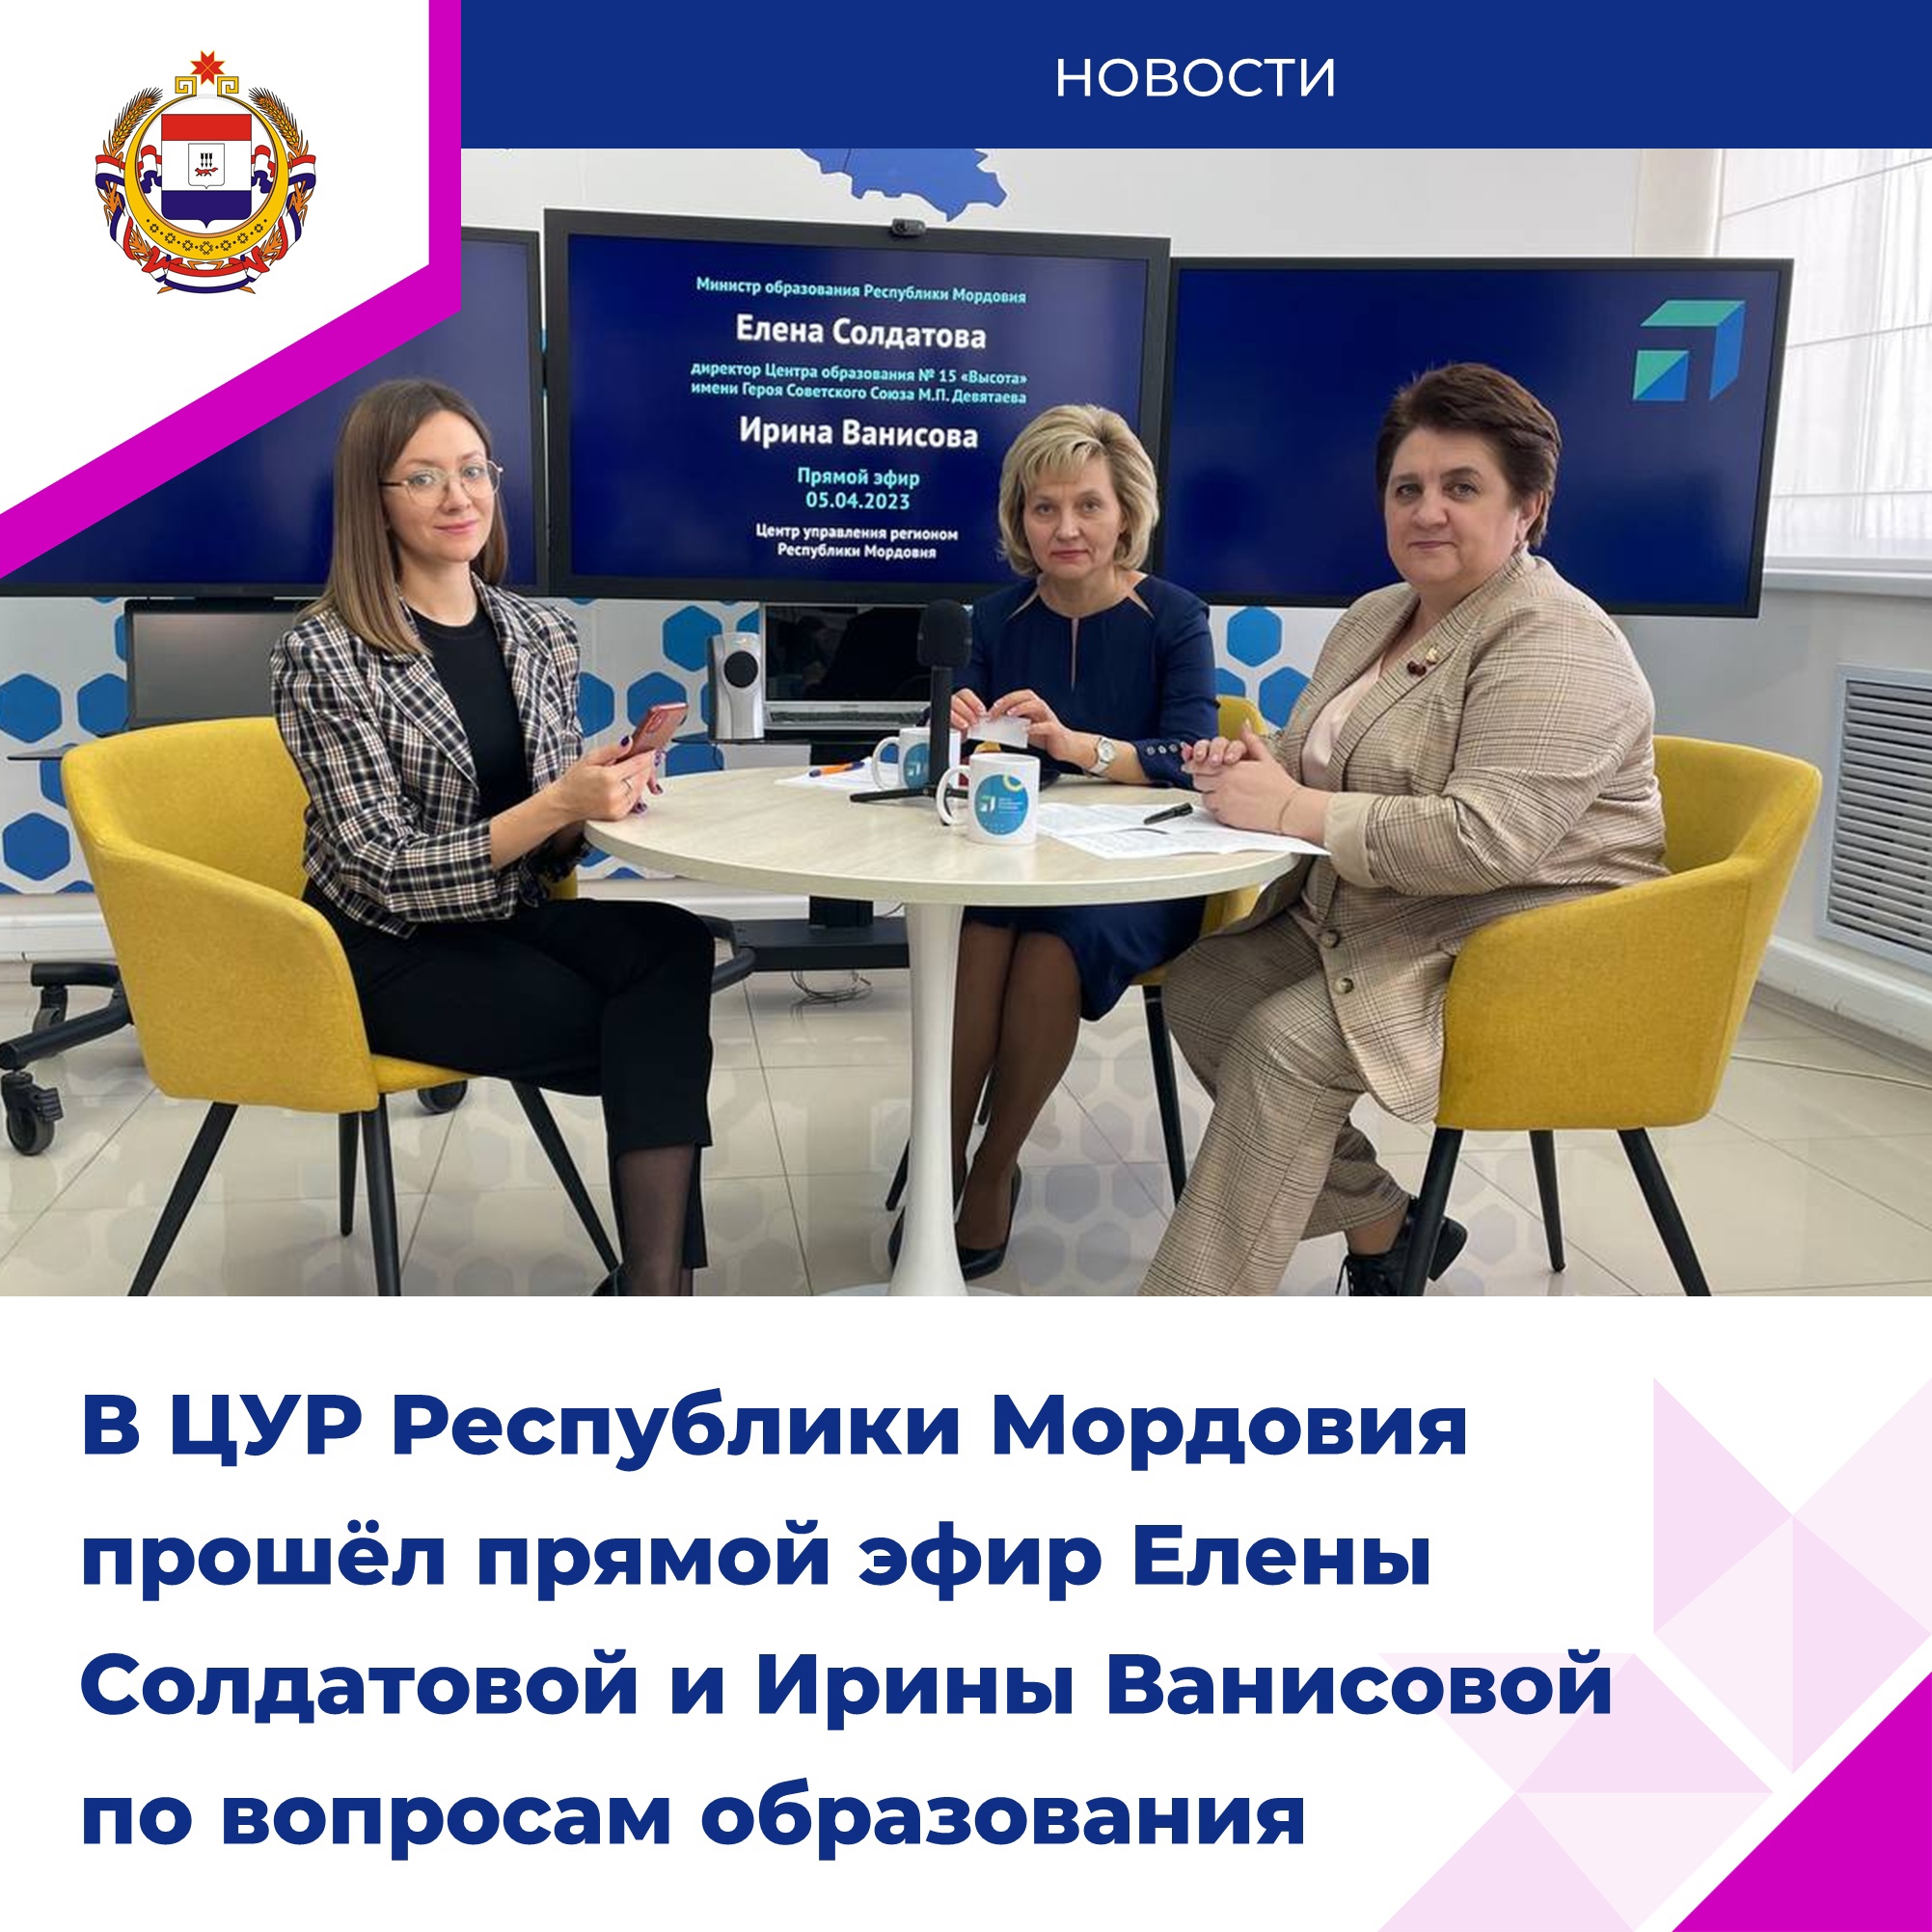 Прямой эфир с Министром образования РМ и директором Центра образования №15 «Высота» им. М.П. Девятаева.